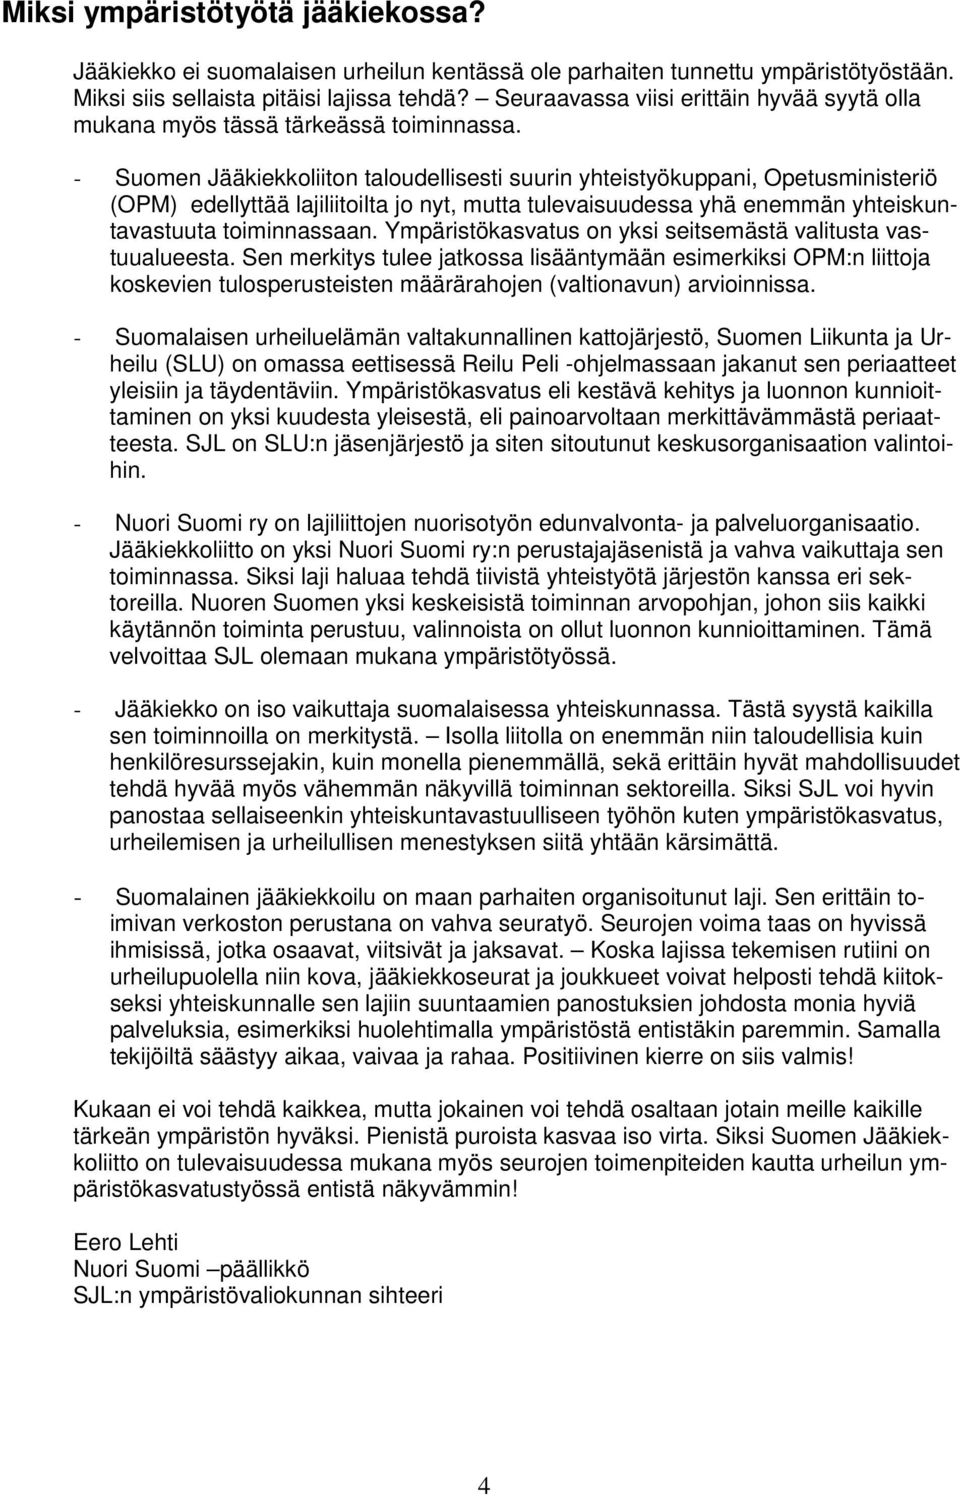 - Suomen Jääkiekkoliiton taloudellisesti suurin yhteistyökuppani, Opetusministeriö (OPM) edellyttää lajiliitoilta jo nyt, mutta tulevaisuudessa yhä enemmän yhteiskuntavastuuta toiminnassaan.